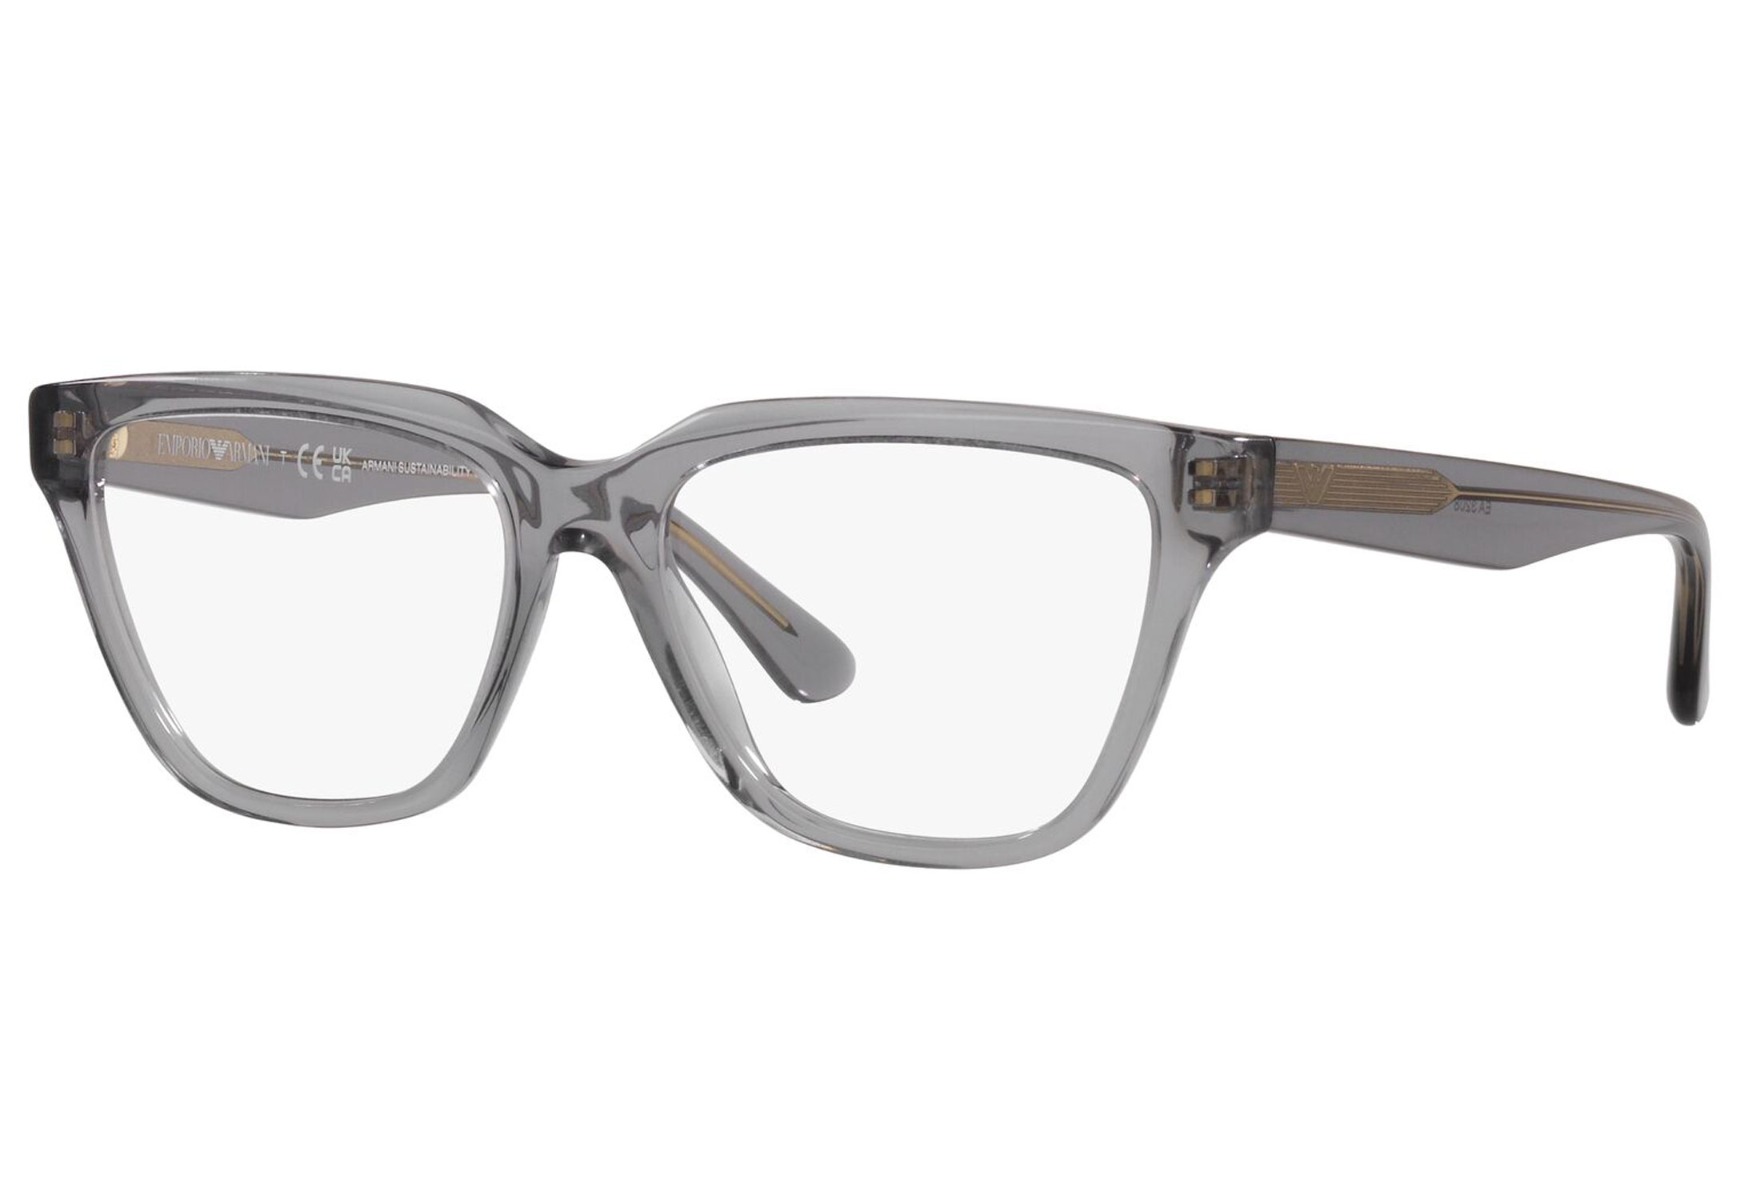 Armani briller fra Emporio Armani - ea3208 5029 - Klar